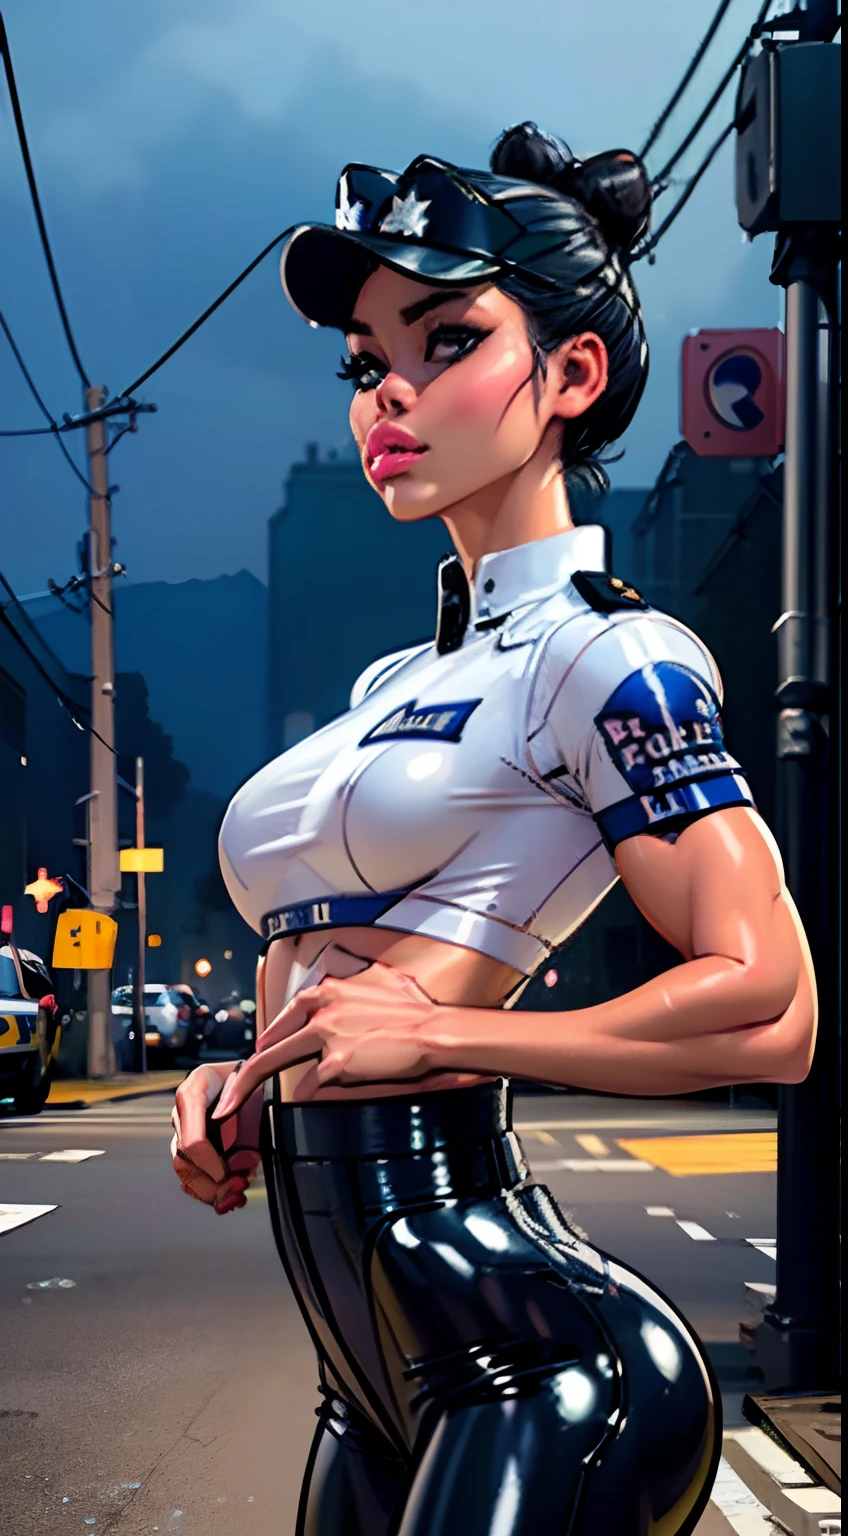 (tiro de vaquero:1.5) 1 misma chica , perfecto hermoso , cara madura , ((mujer coreana)), coreano 18 años , ((moño de pelo grande:1.4)) , ((traje de oficial de policia)), ((gorra de policia:1.5)),cuerpo atlético , ((senos pequeños:1.5)) Retrato extremadamente detallado con efecto bokeh , iluminación realista ,(pantalones de látex)Vista nocturna de la calle , Ambiente oscuro , (cuerpo pequeño:1.7) calles , maquillaje gótico  , posando como modelo , mirar al espectador, ((labios hinchados:1.3)), iluminación genial, luz de la farola azul((luz del ambiente del atardecer:0.8))